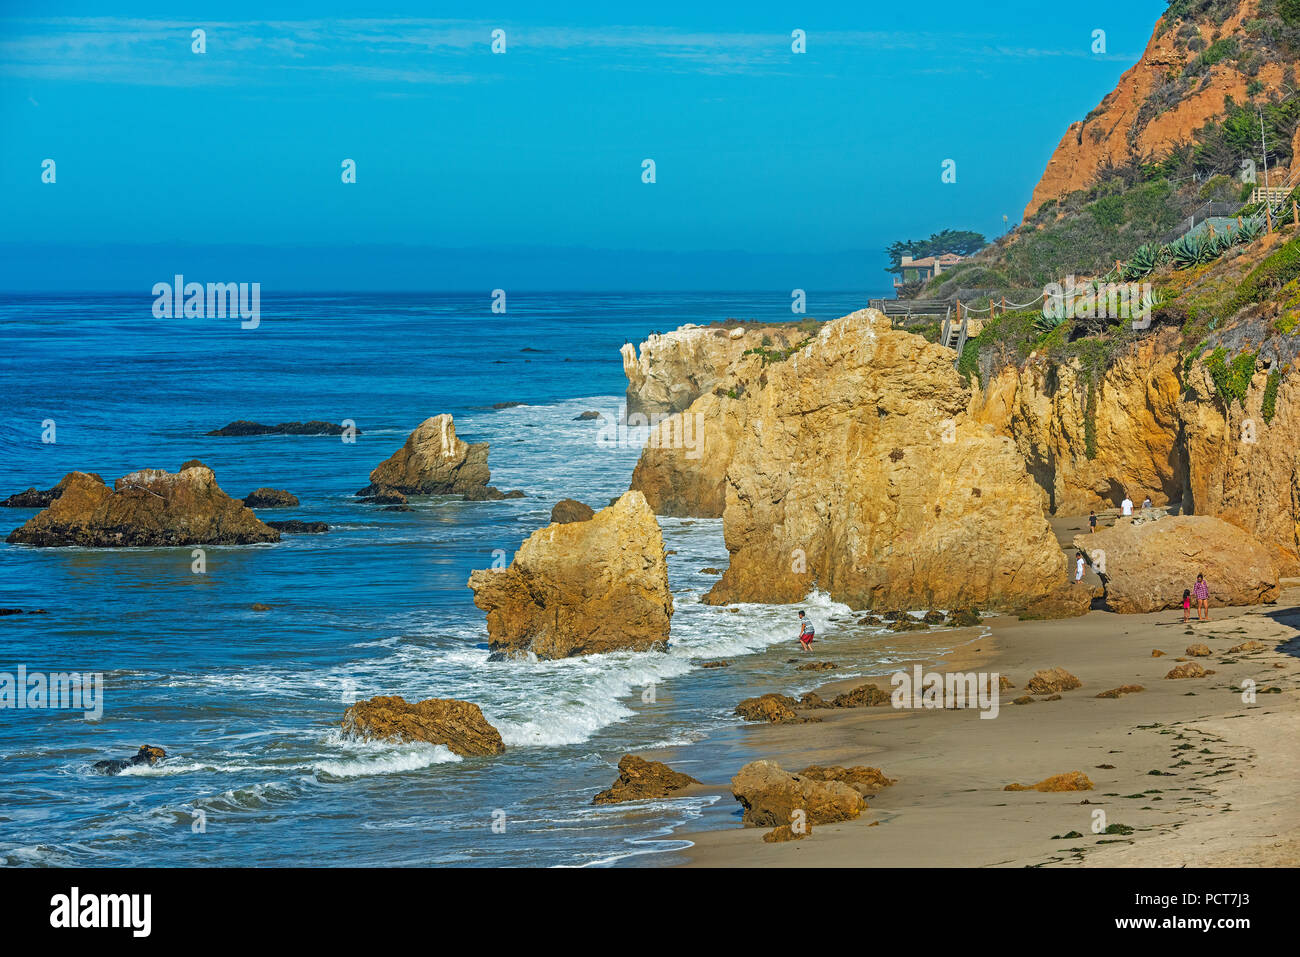 El Matador State Beach California Stock Photo